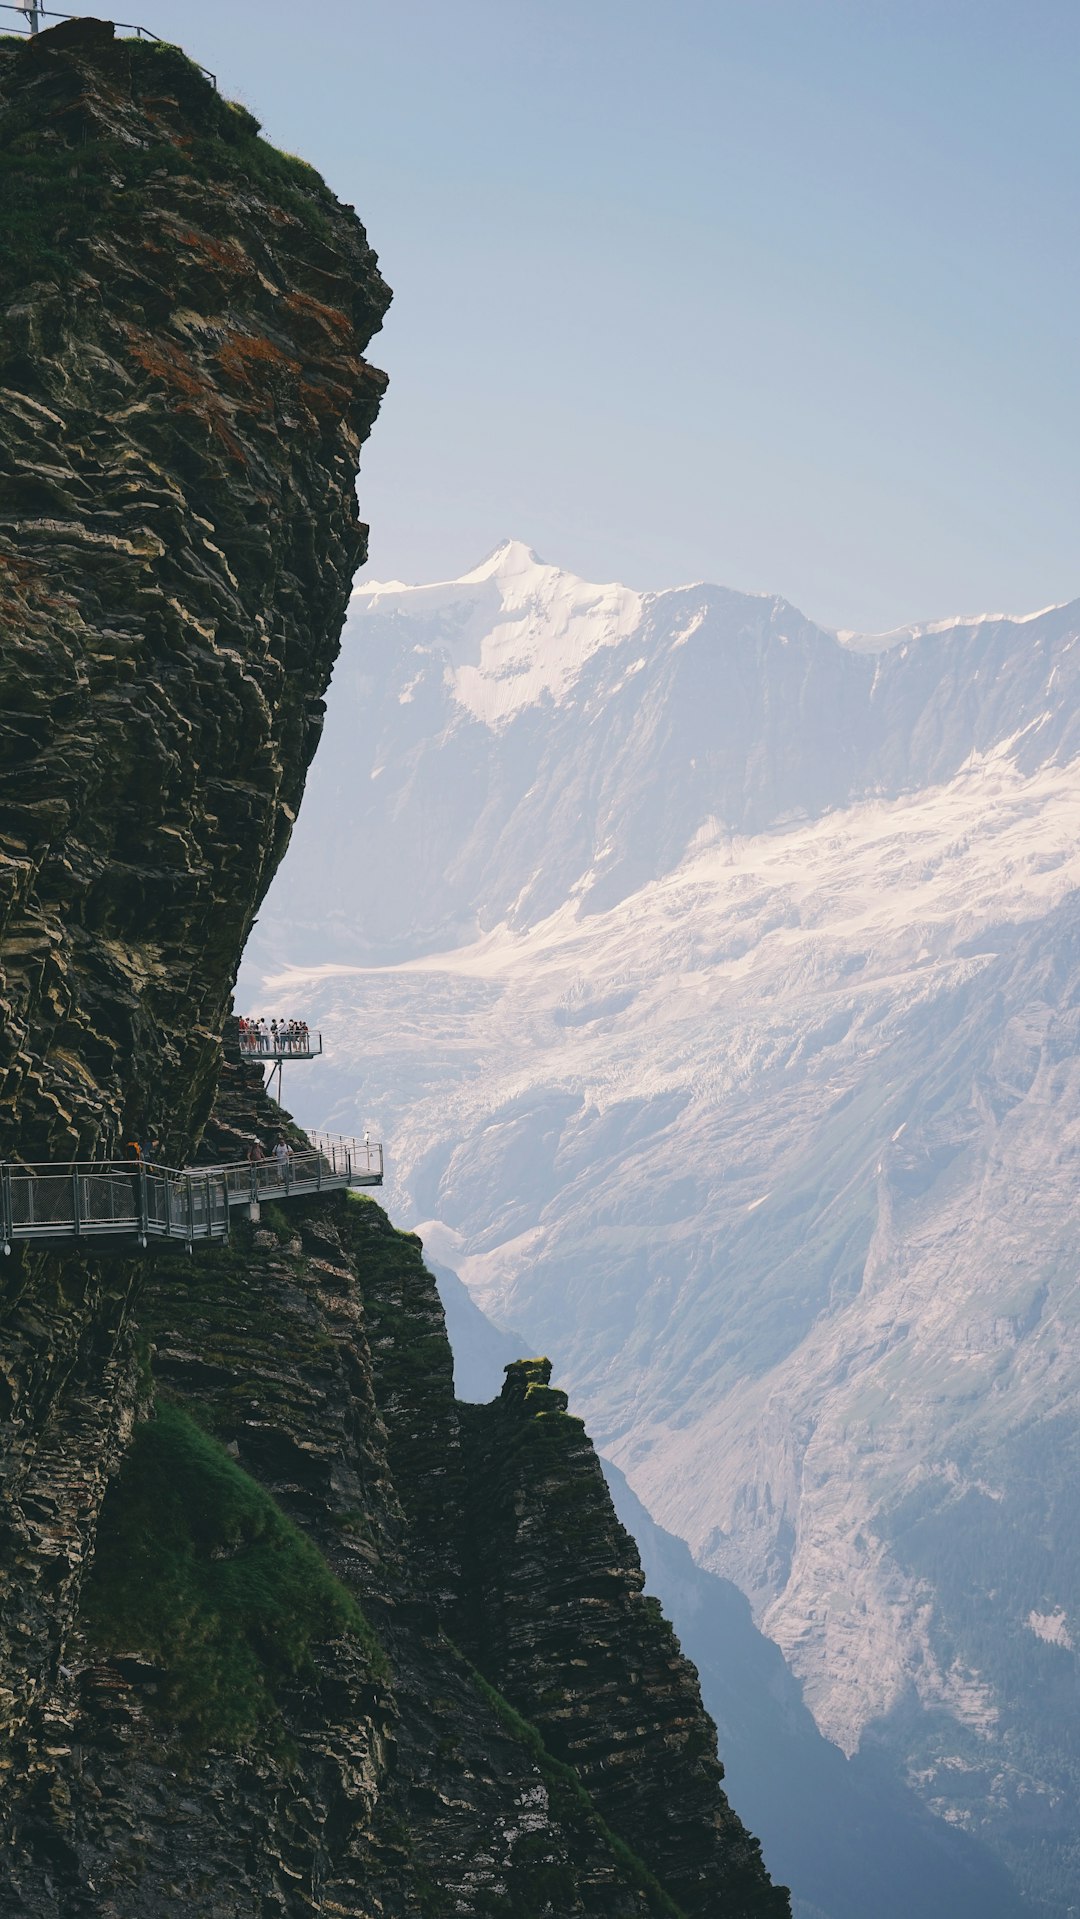 Cliff photo spot Grindelwald Switzerland